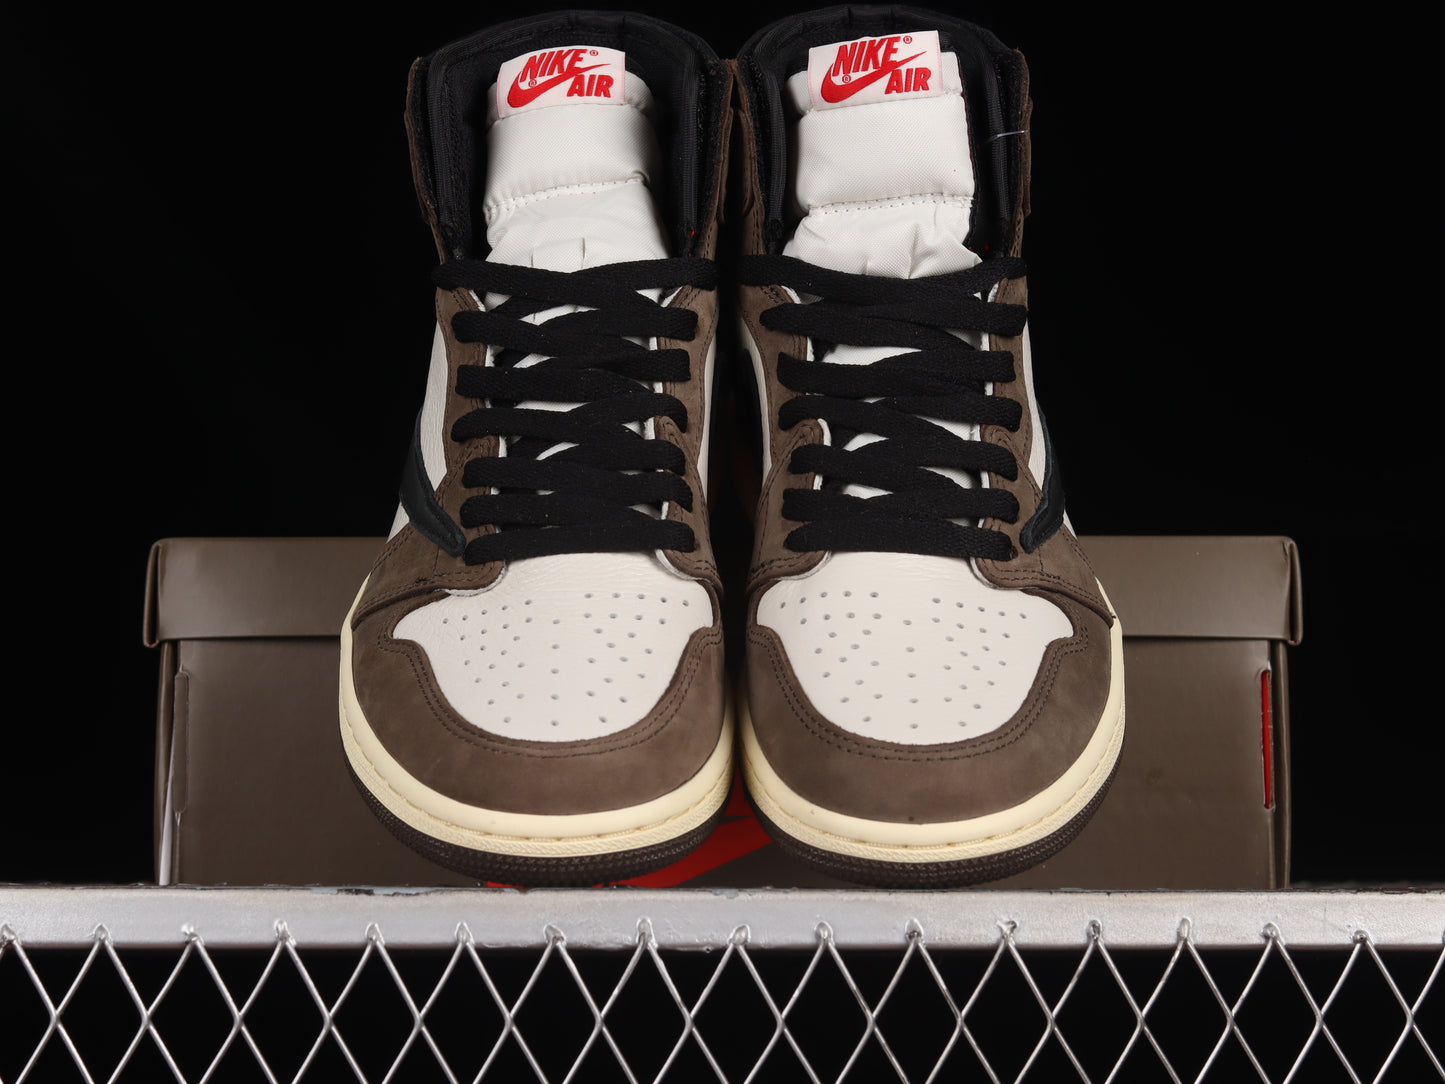 Nike Jordan 1 high travis Scott